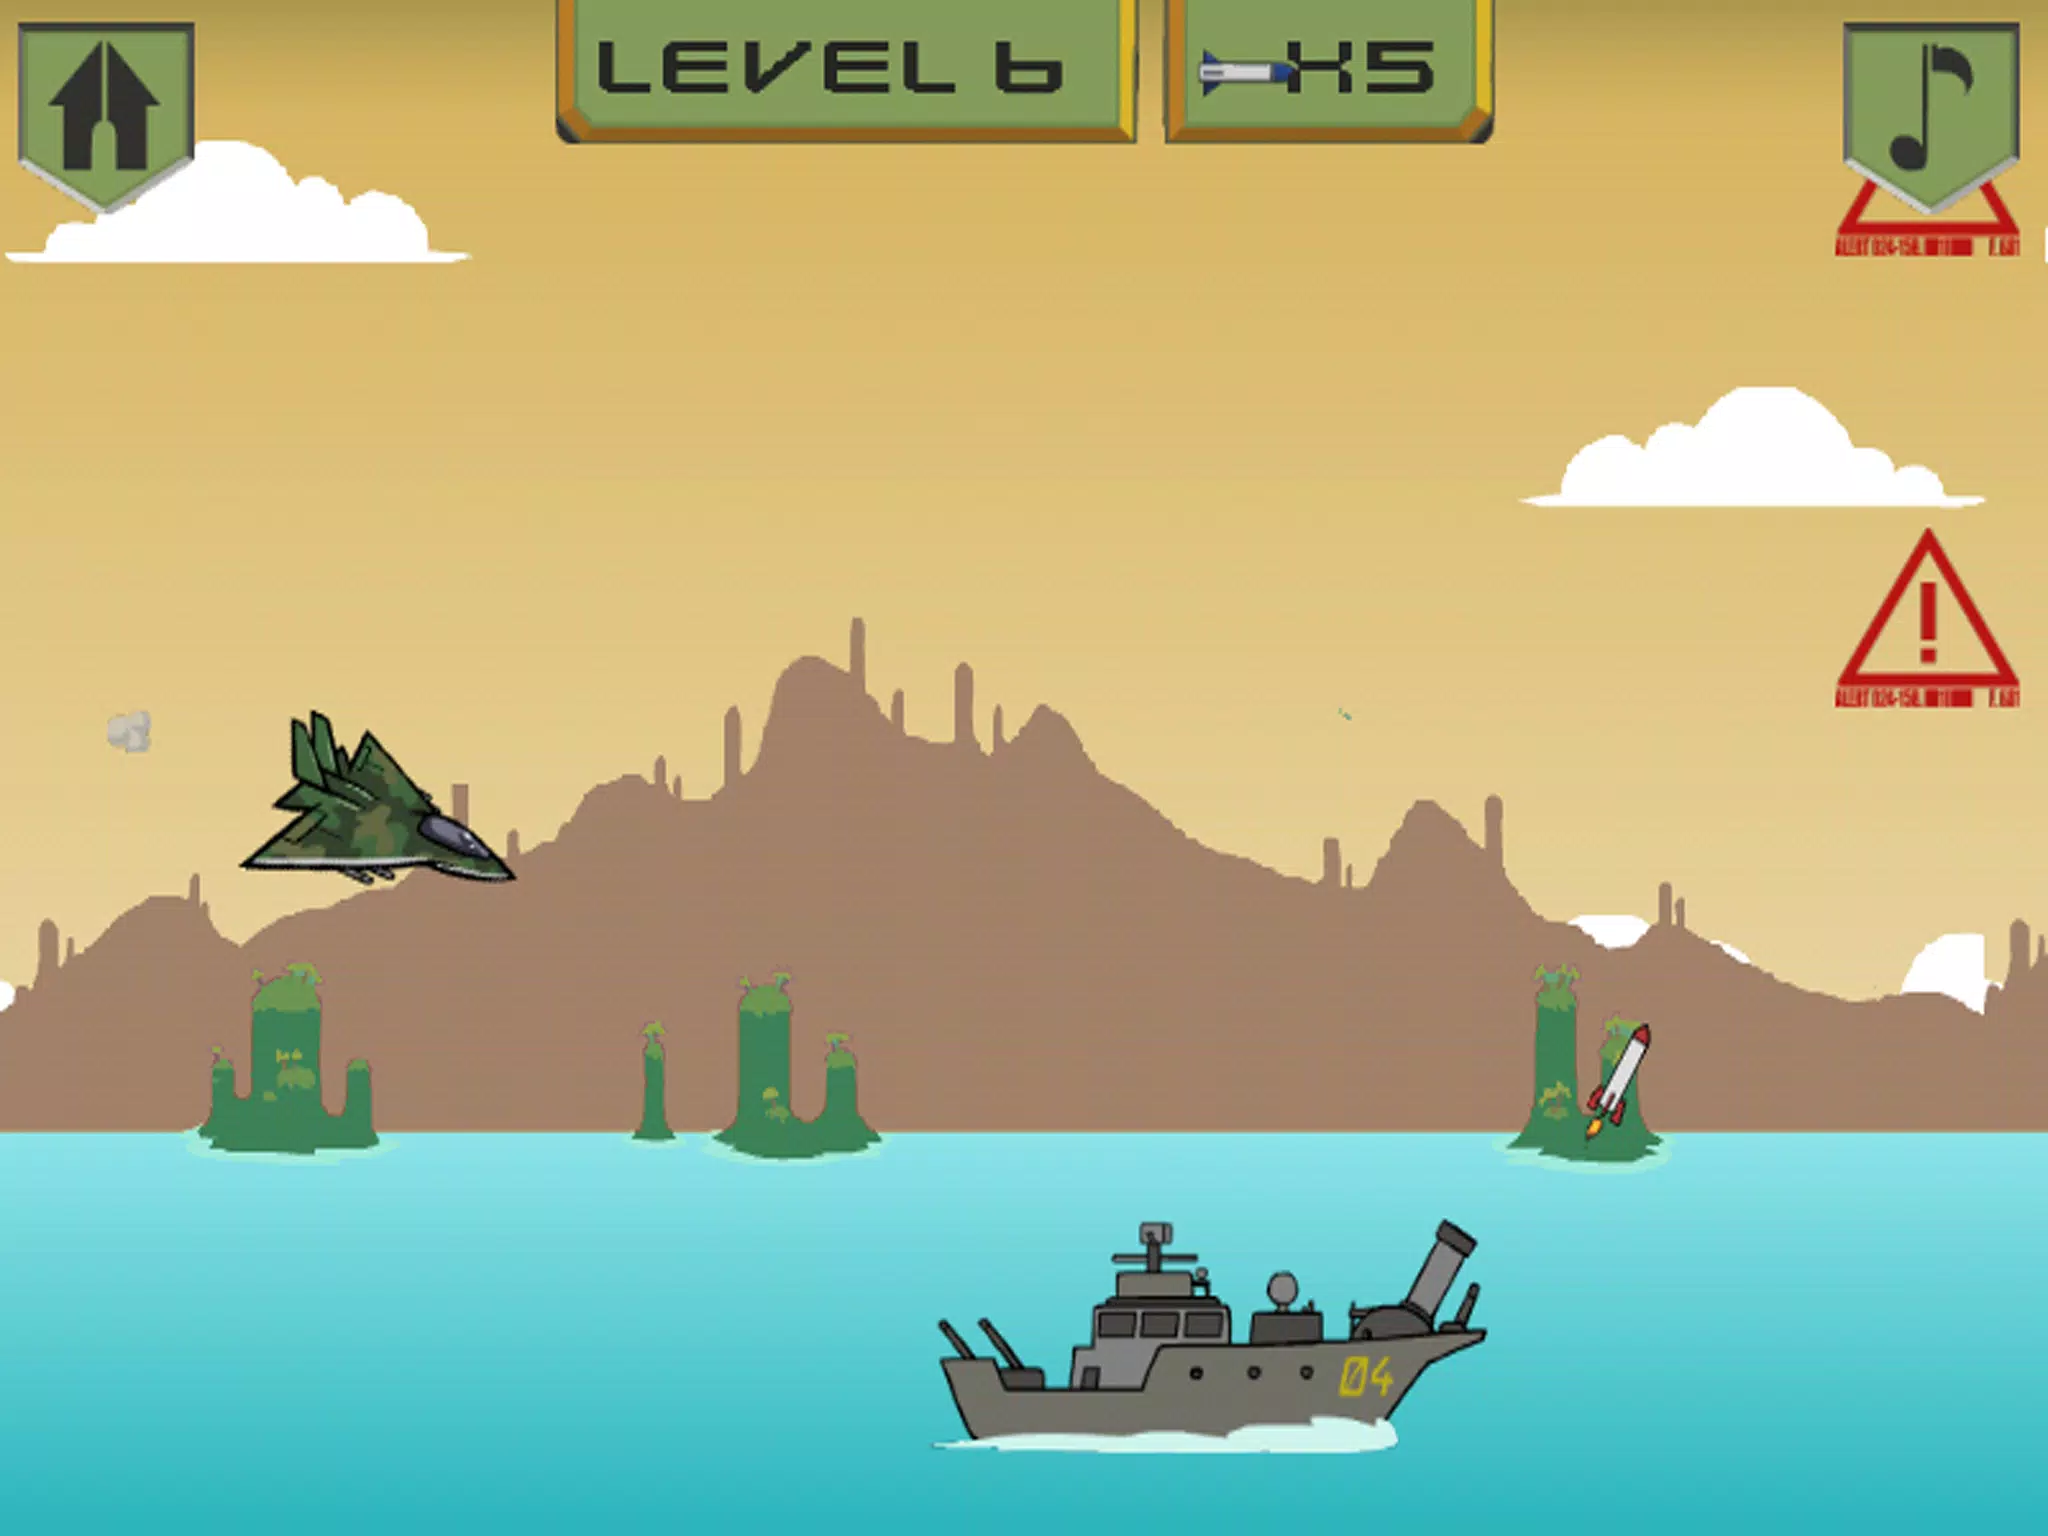 Download do APK de Jogos de Aviões de Guerra para Android